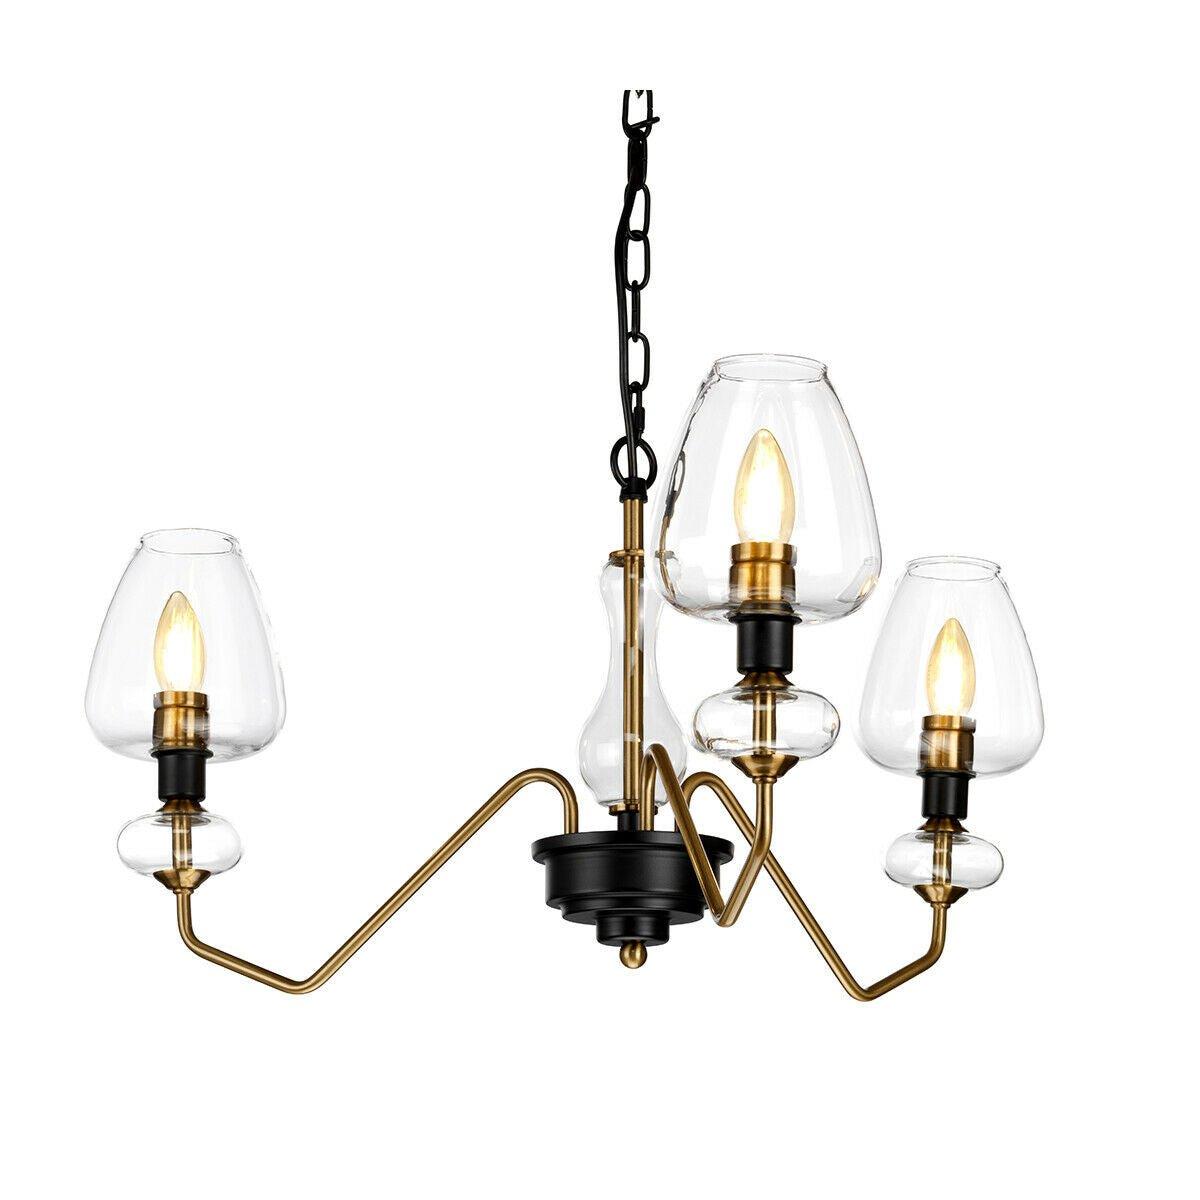 3 Bulb Pendant Light Fitting Aged Brass Finish Charcoal Black Paint LED E14 40W